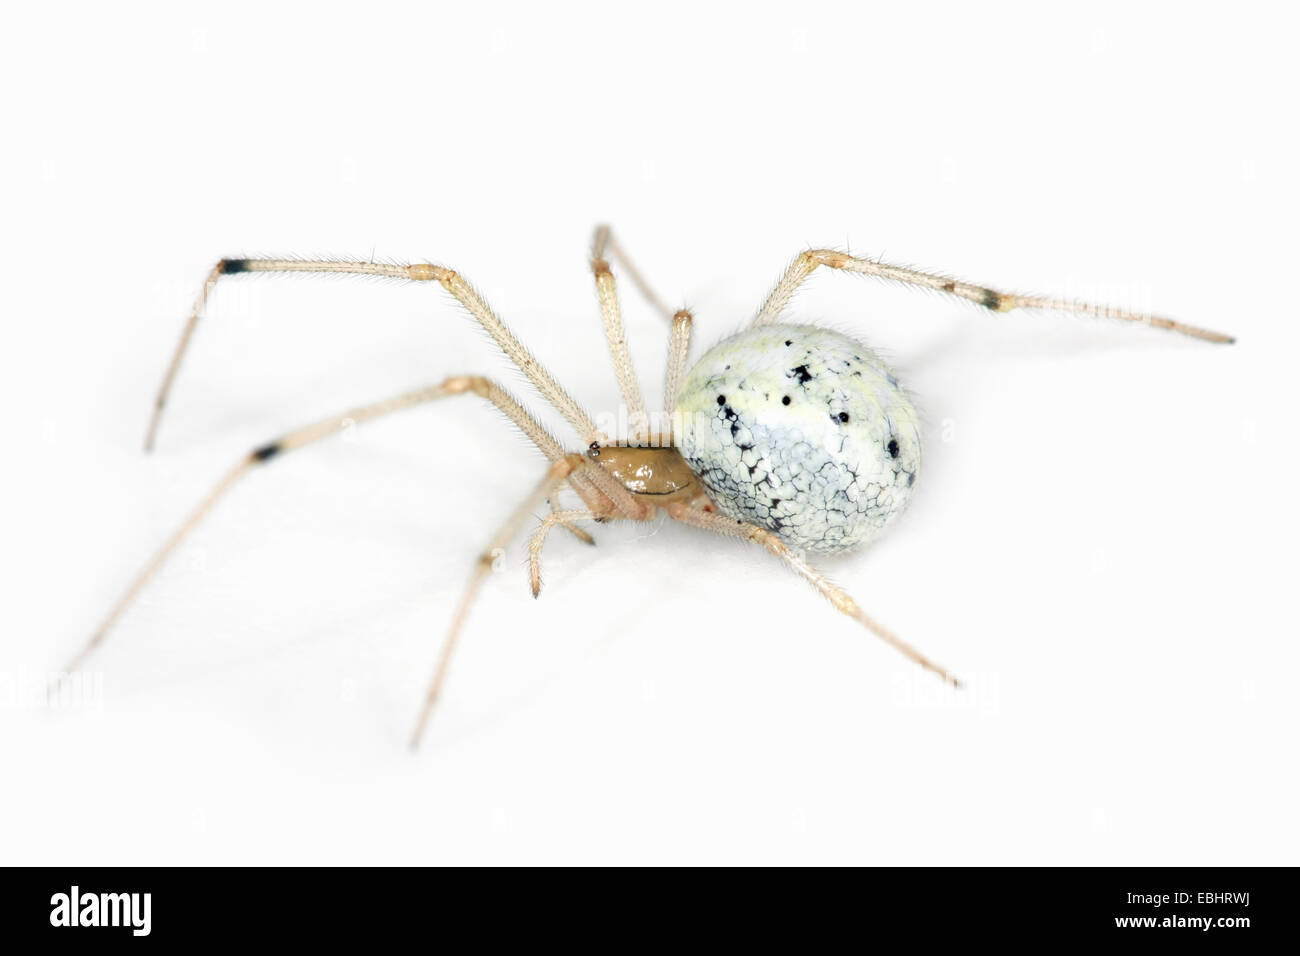 Una femmina Candystripe (o) polimorfica spider (Enoplognatha ovata) su uno sfondo bianco, parte della famiglia Theridiidae - Ragnatela tessitori. Foto Stock